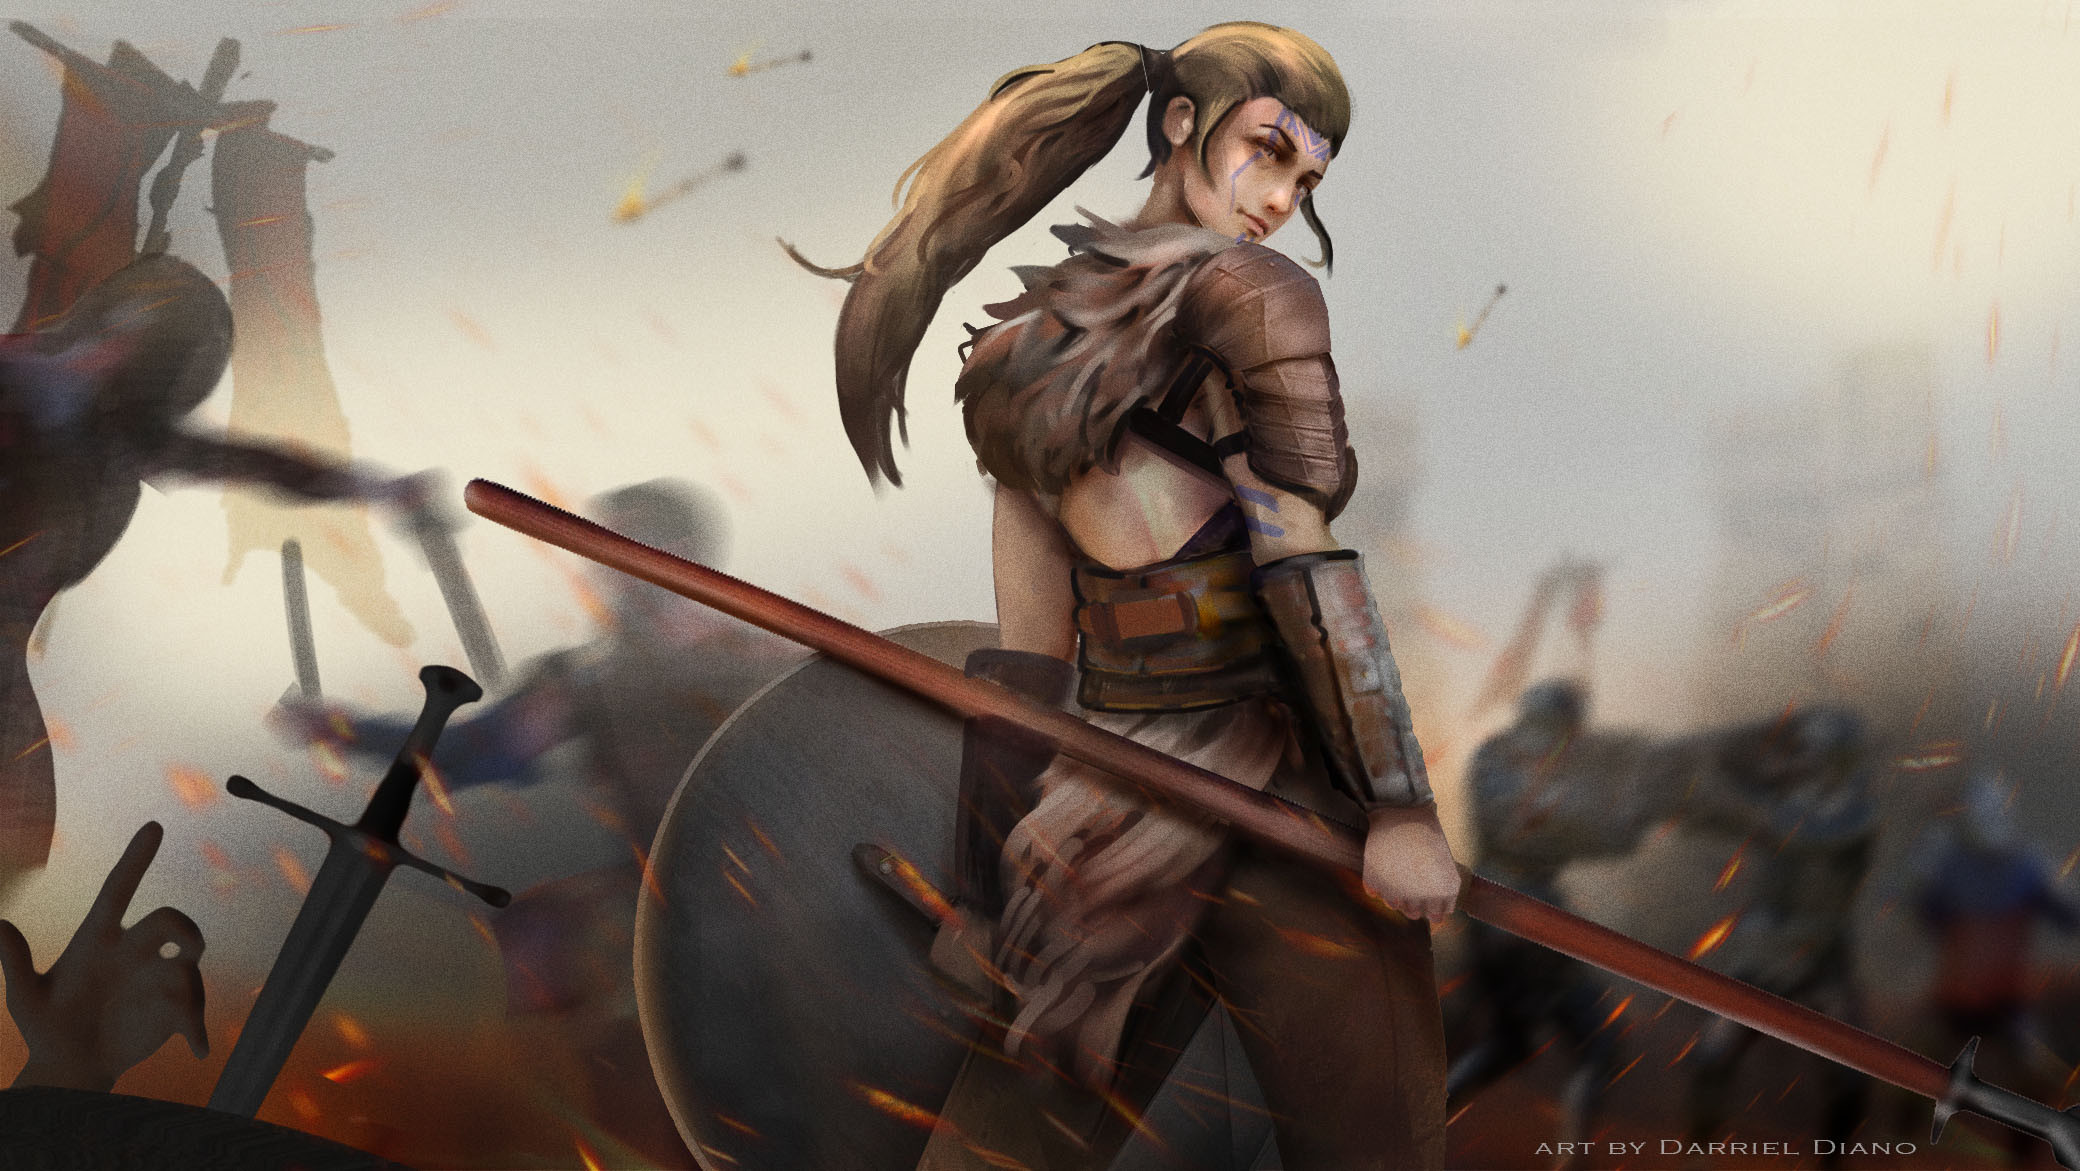 Warrior Women Battle Looking Back Sparks Brunette Digital Art Digital Painting Fan Art Artwork 2080x1171